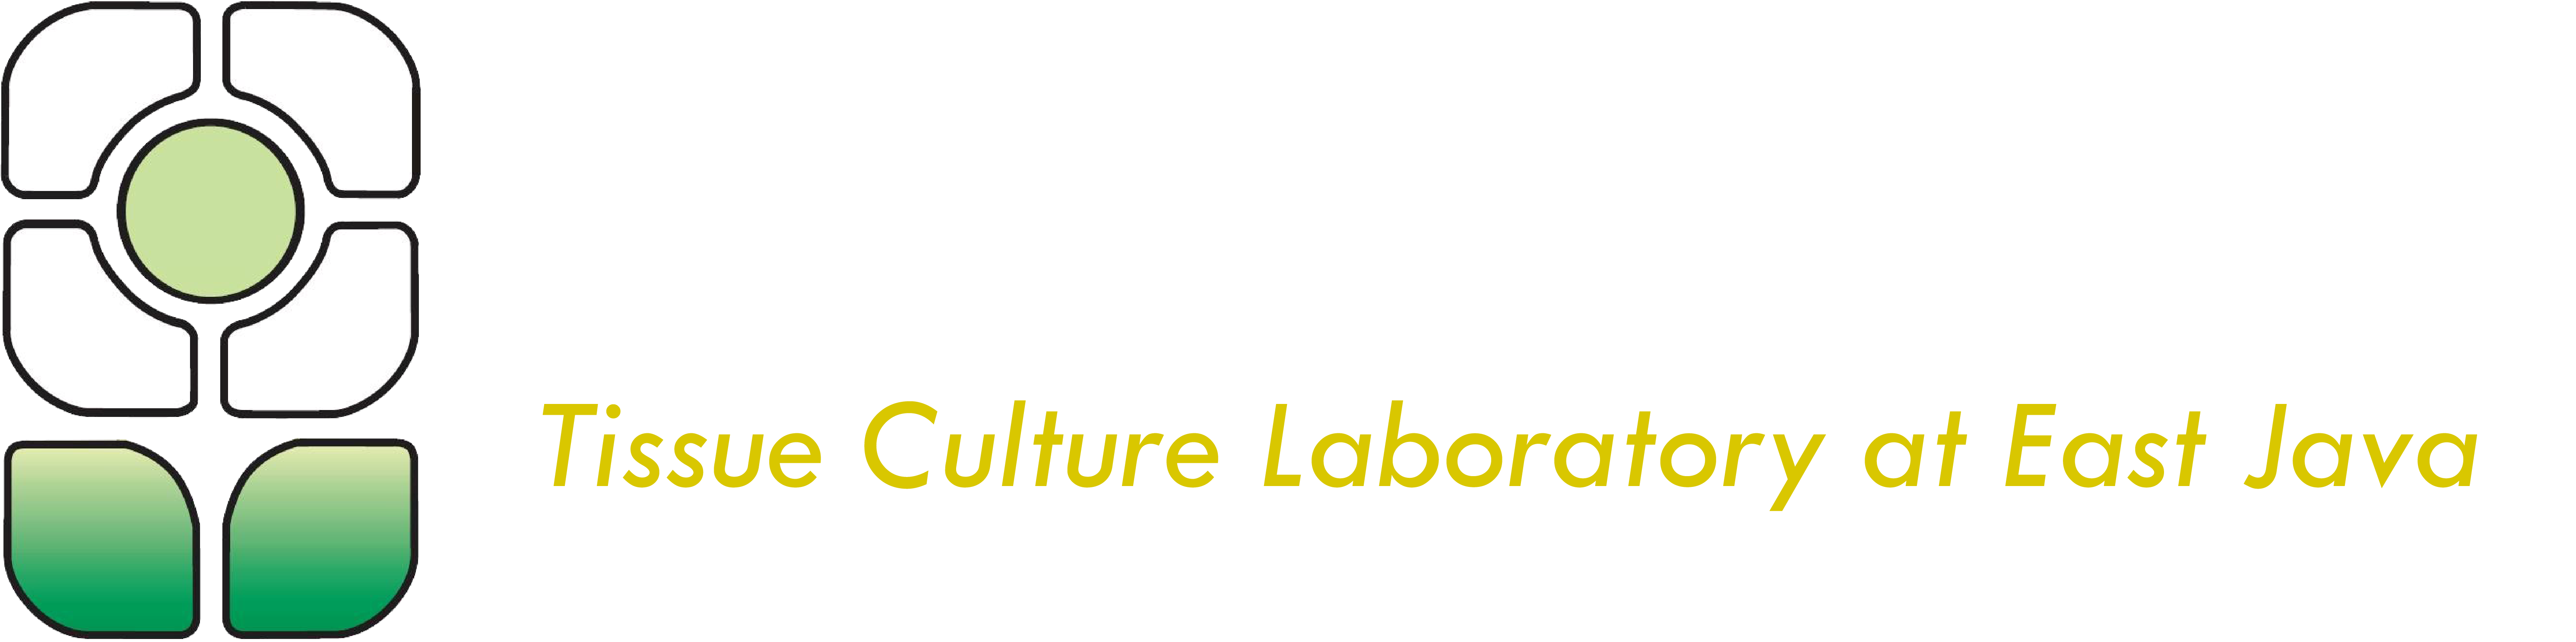 (c) Agrikulturapt.com